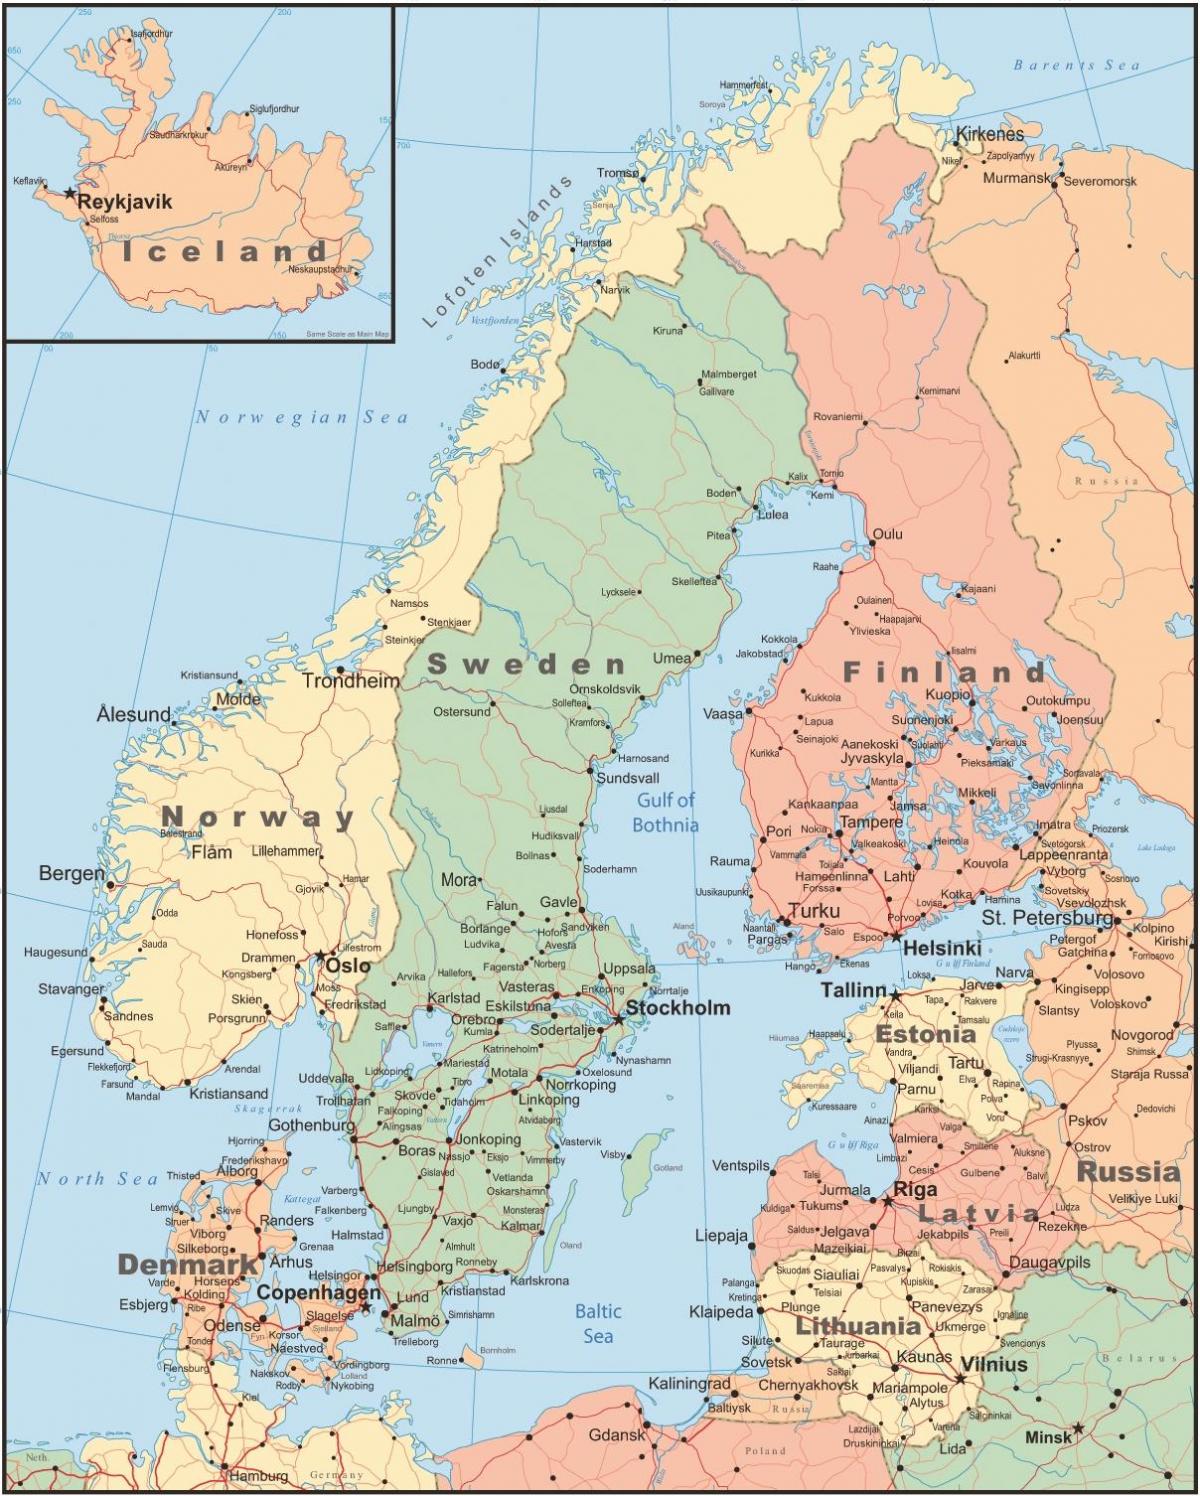 zemljevid danske in okoliških državah